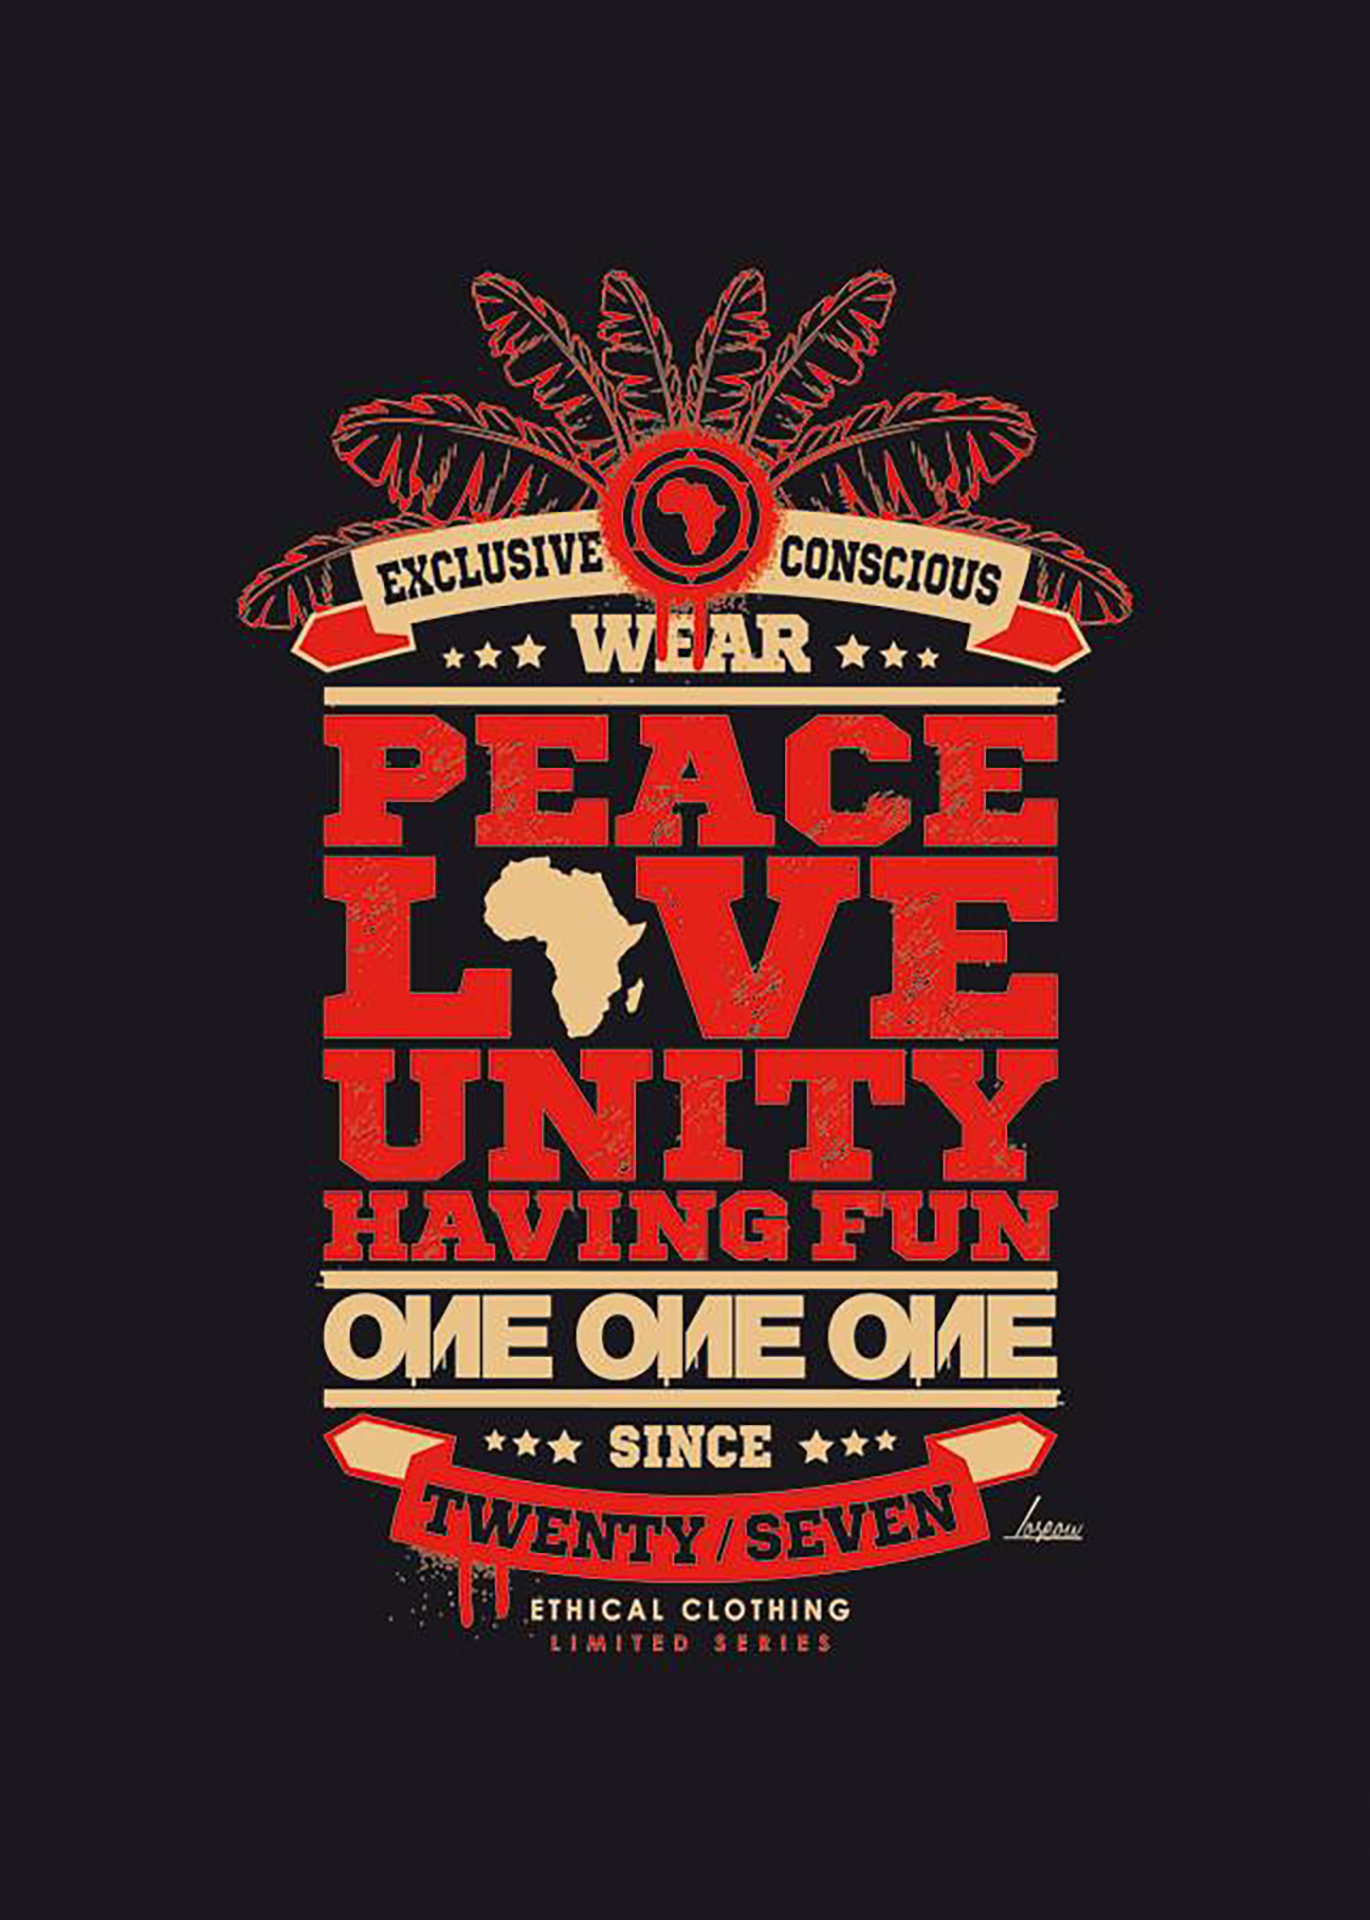 Visuel t-shirt et sweat shirt pour la marque One-One-One - Peace Love Unity Having Fun. Réalisé par Loseou